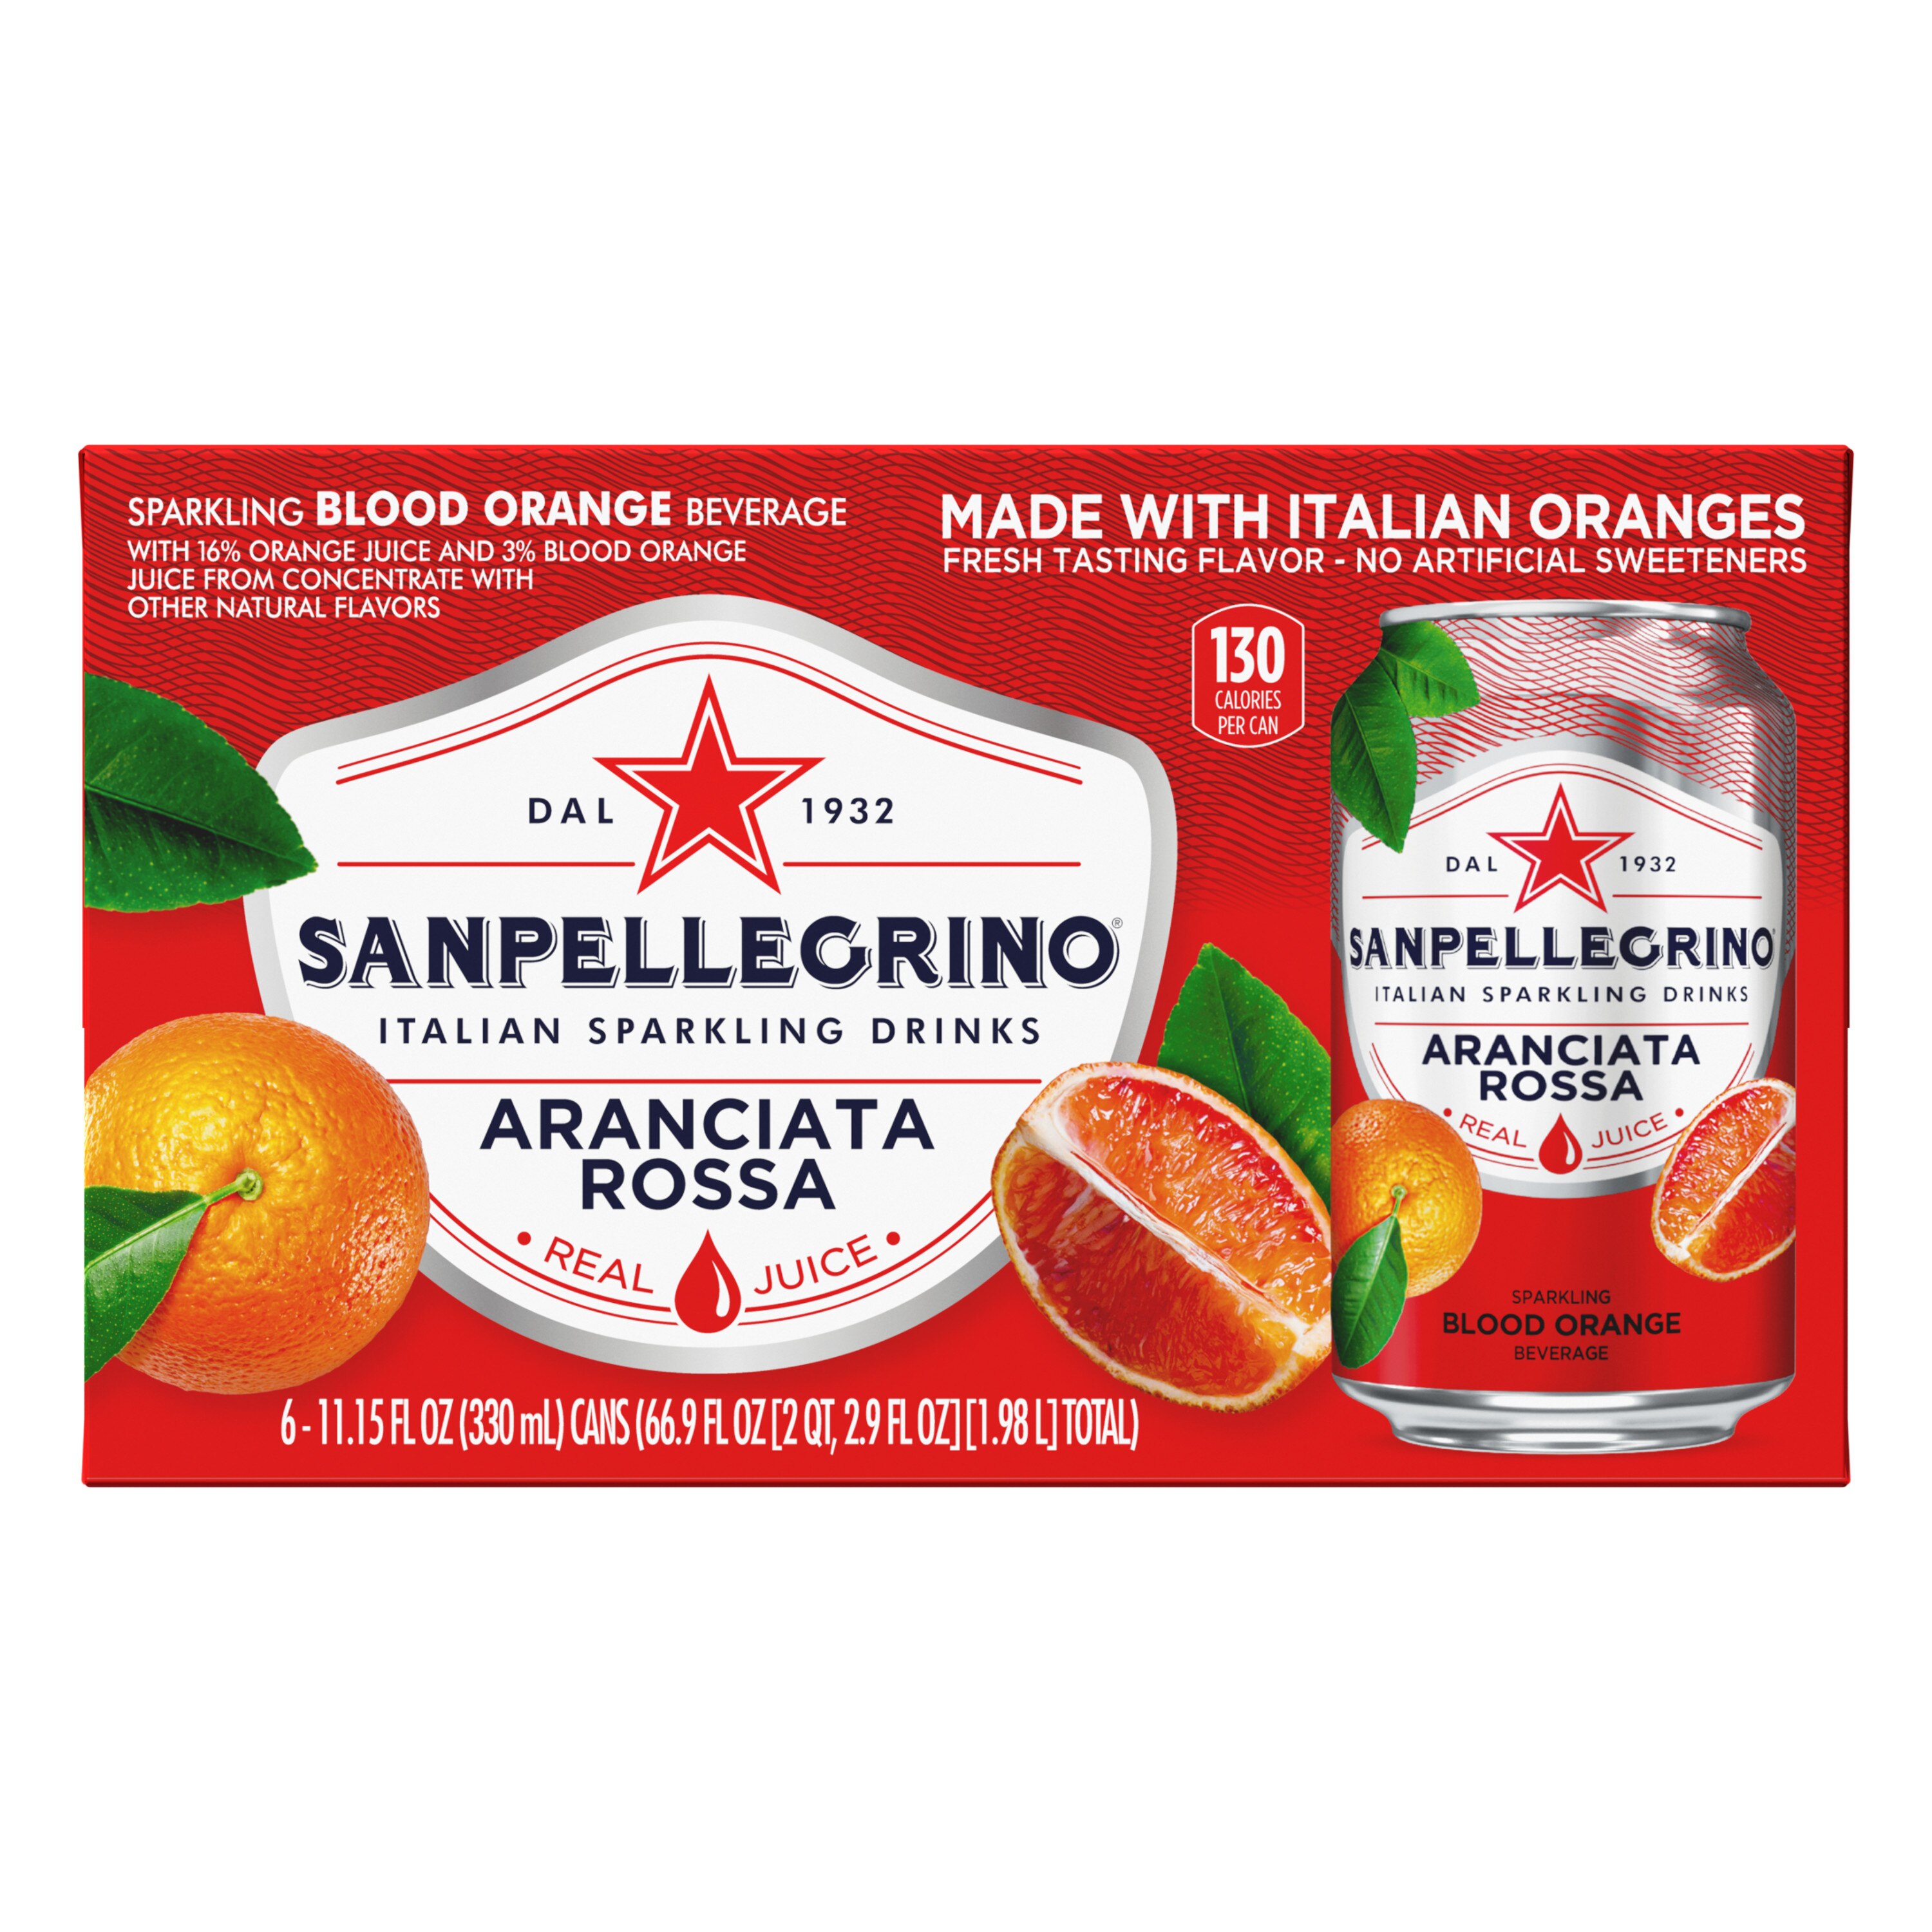 Sanpellegrino Italian Sparkling Drink Aranciata Rossa, Sparkling Orange and Blood Orange Beverage, 6 Pack of 11.15 Fl Oz Cans